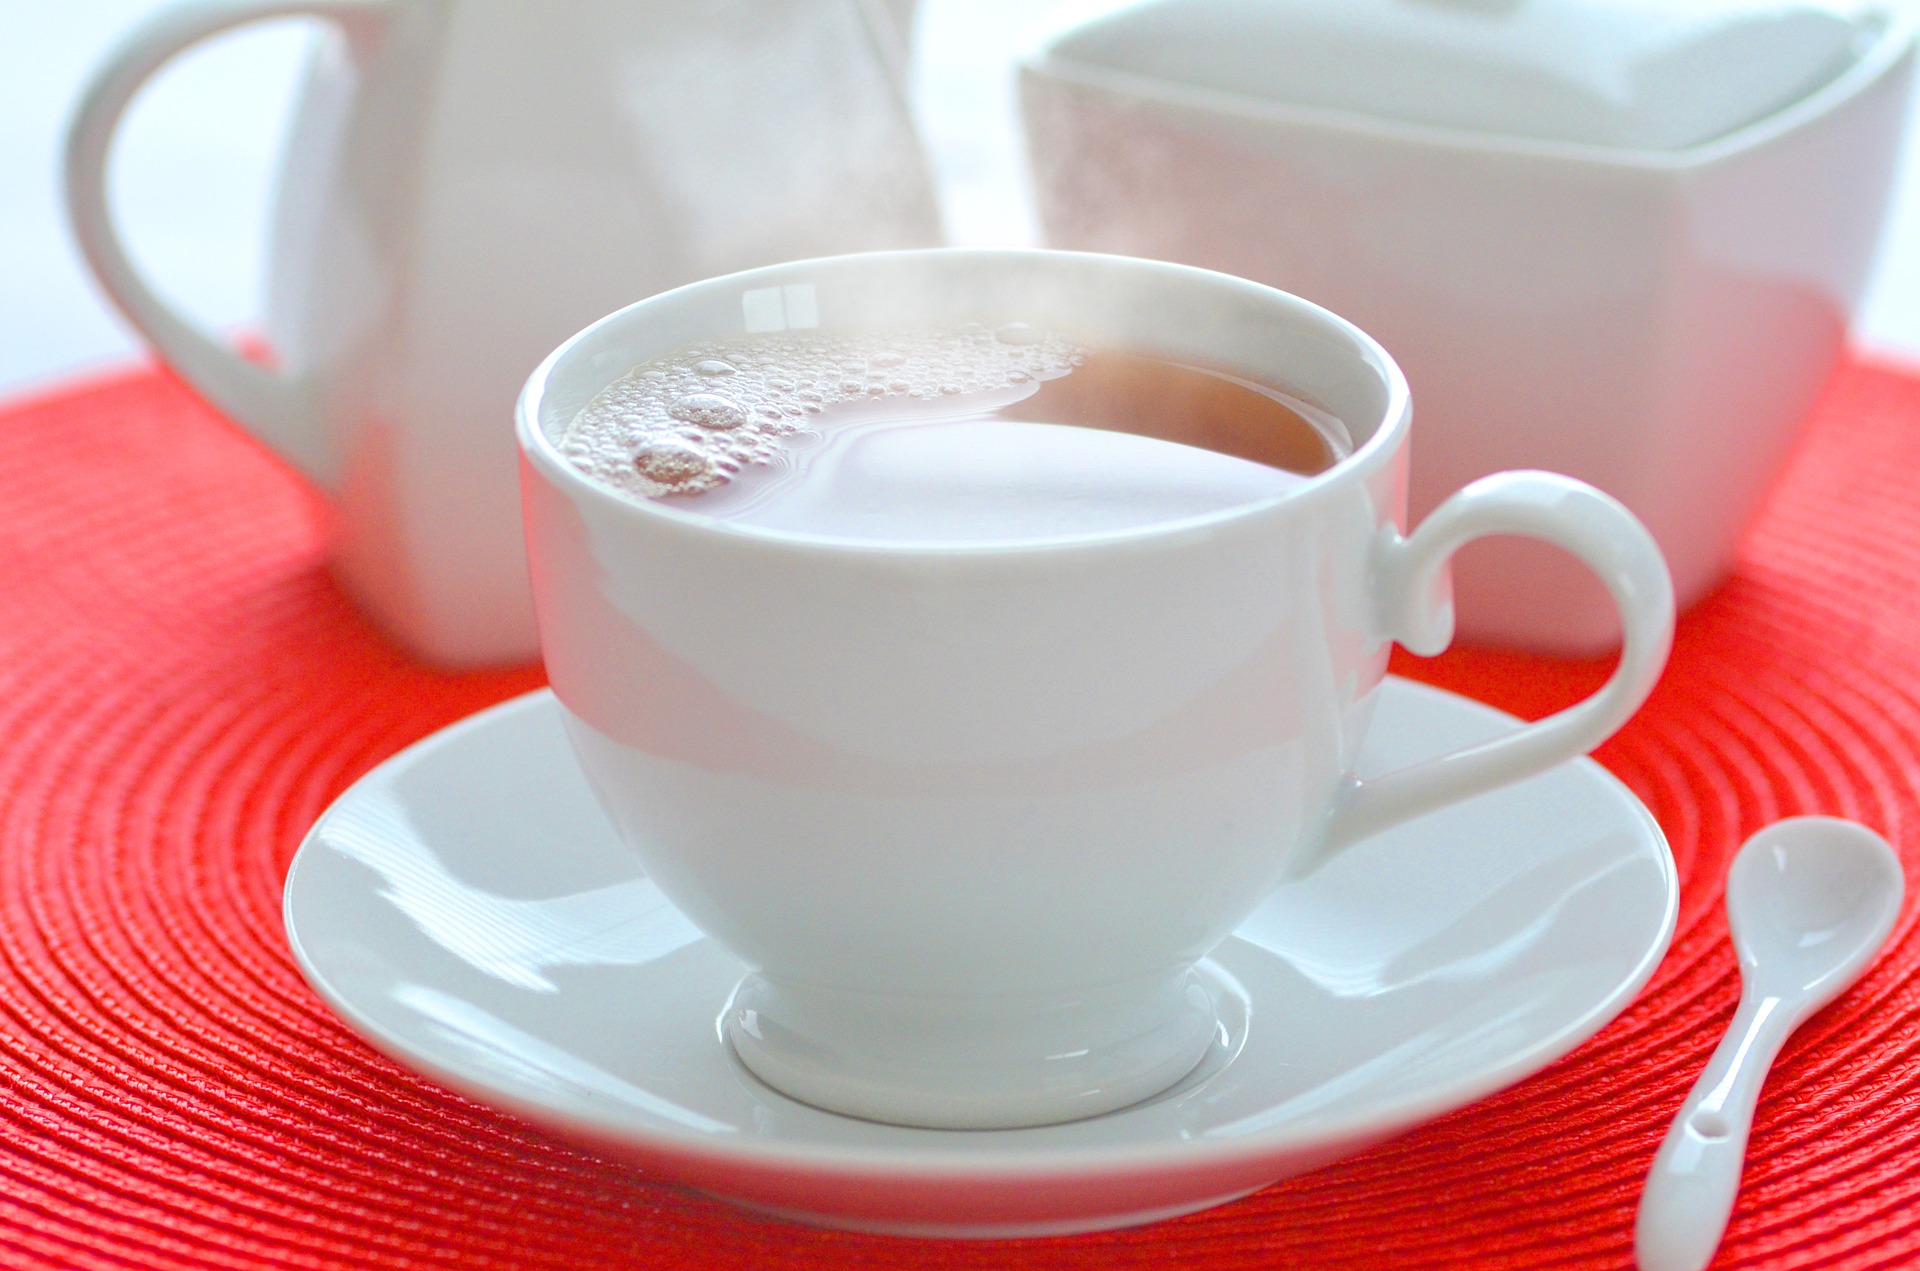 Заваривать чай в заварнике стоит из рассчета максимум чайная ложка сухого чая на чашку воды